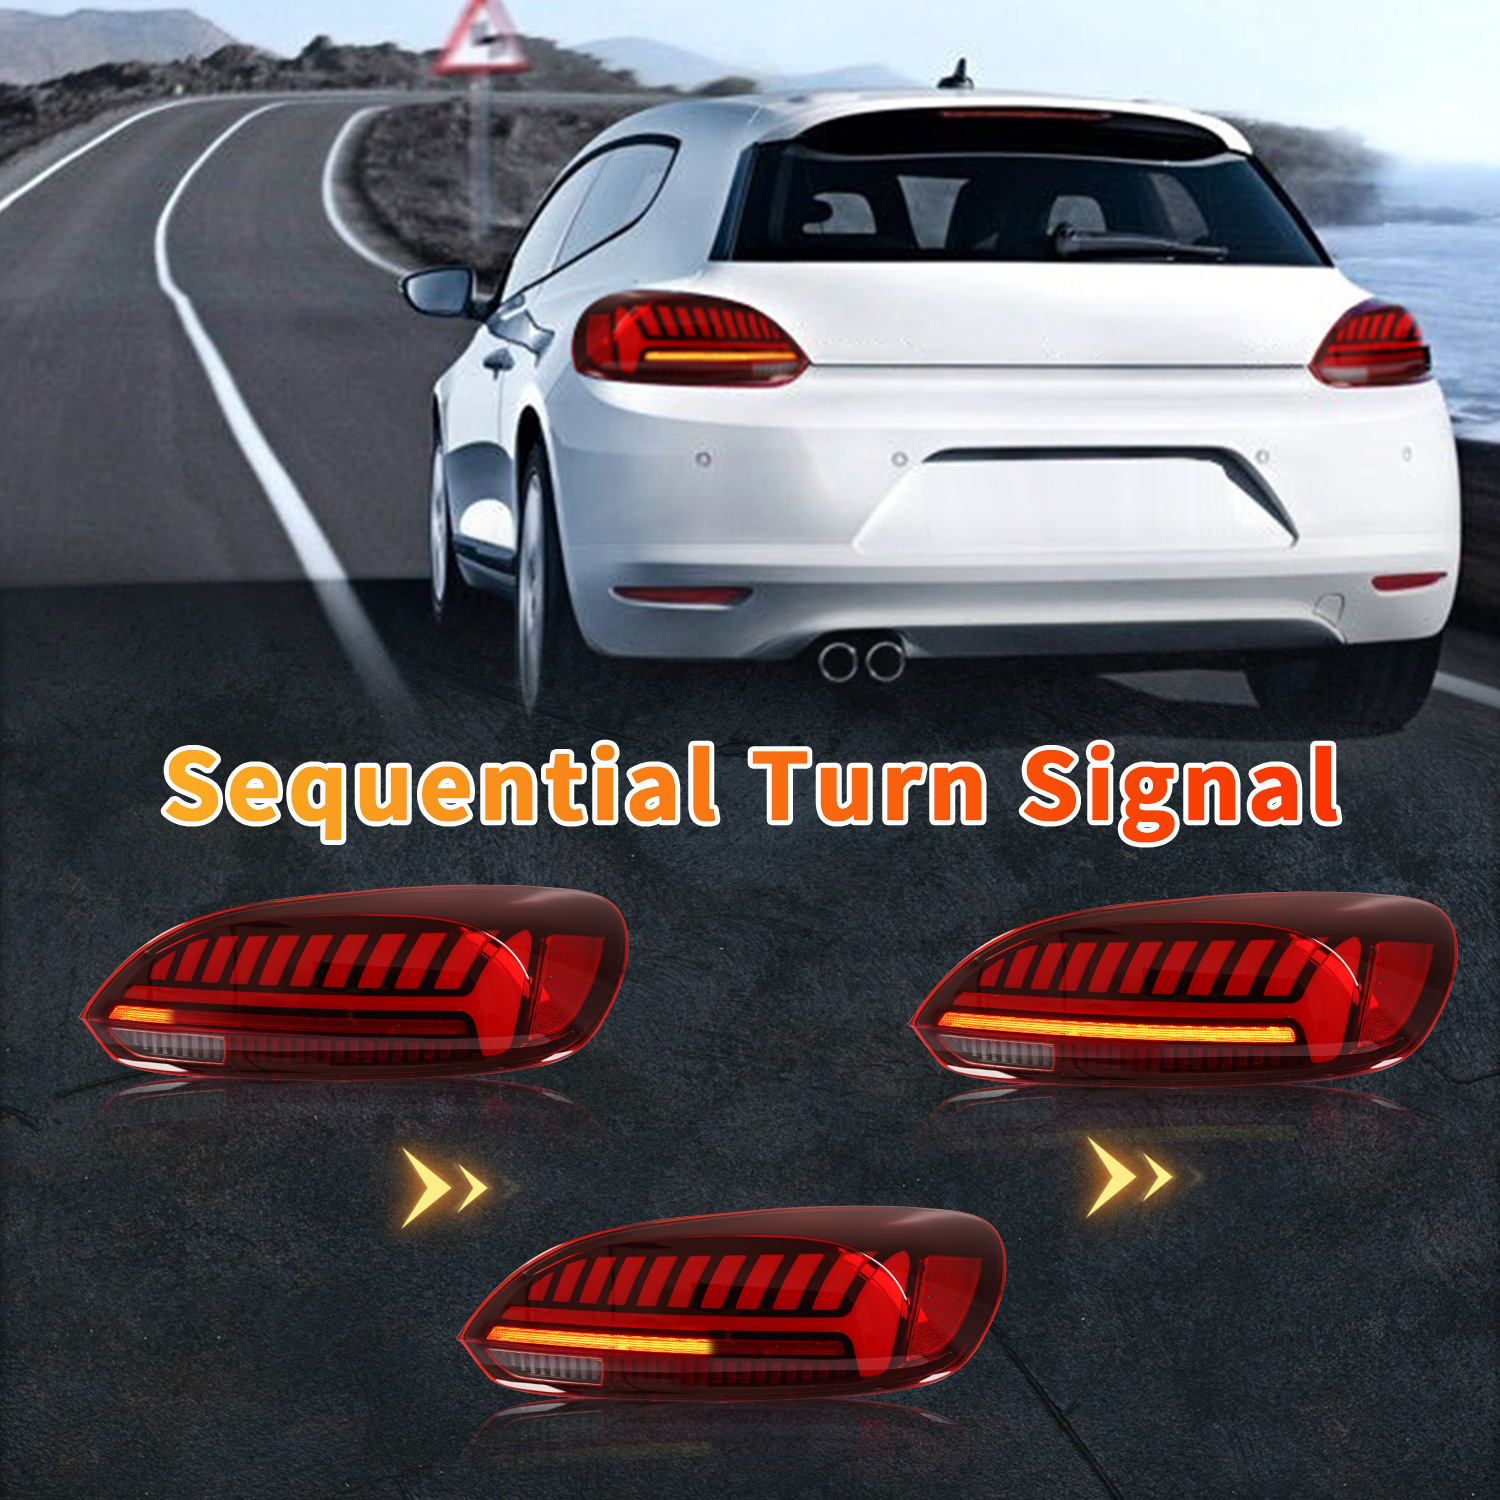 Auto Waren Rücklicht für VW Scirocco 2009-2013 Bremse Rücklichter Hinten Lampe LED Signal Rückfahr Parklichter